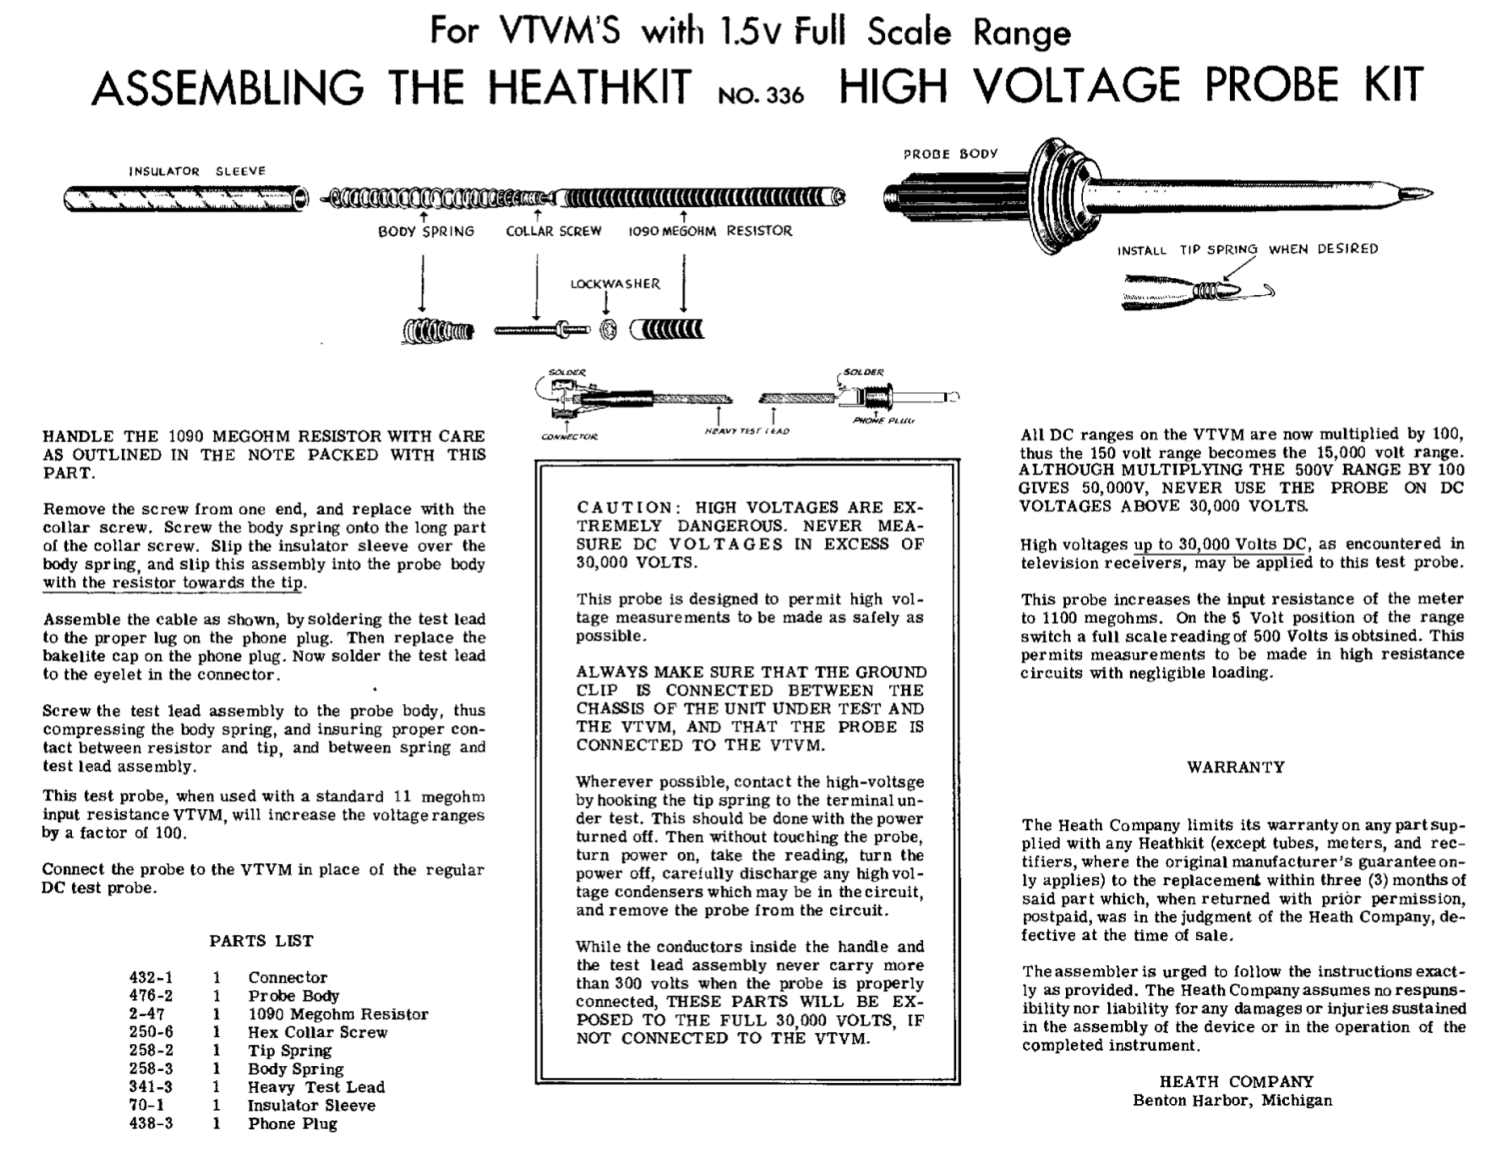 Heathkit 336 HV Probe – Assembly Instructions